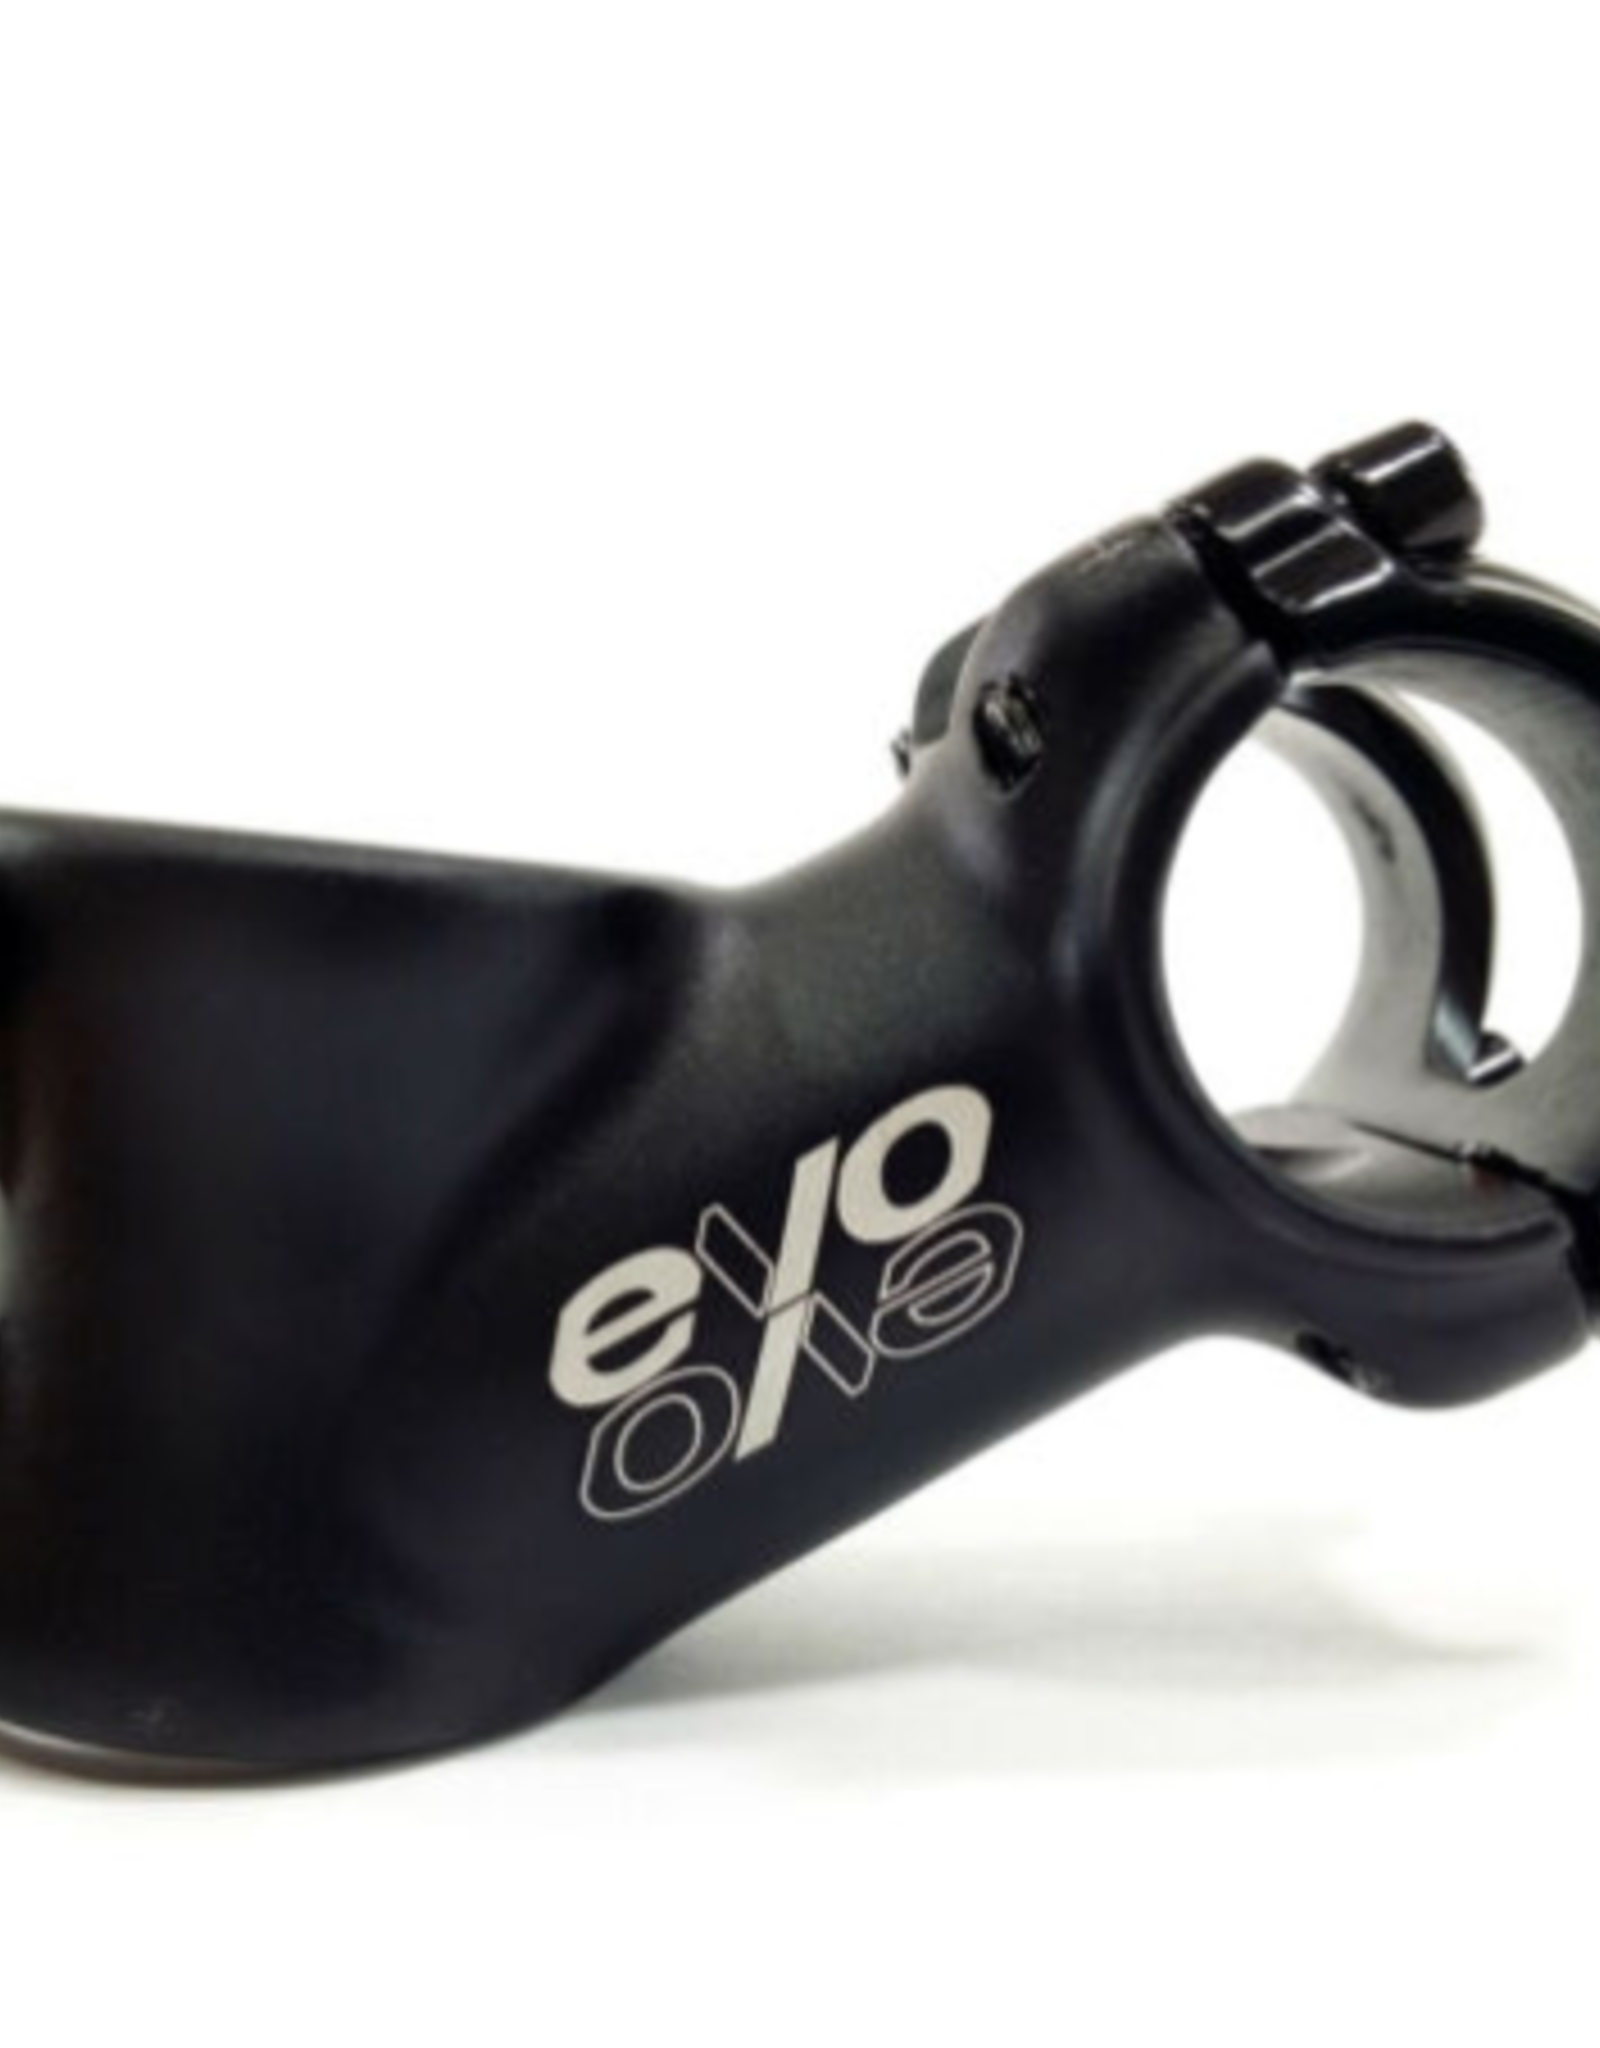 EVO EV , E-Tec, Stem, 28.6mm, 60mm, -35', 25.4mm, Black